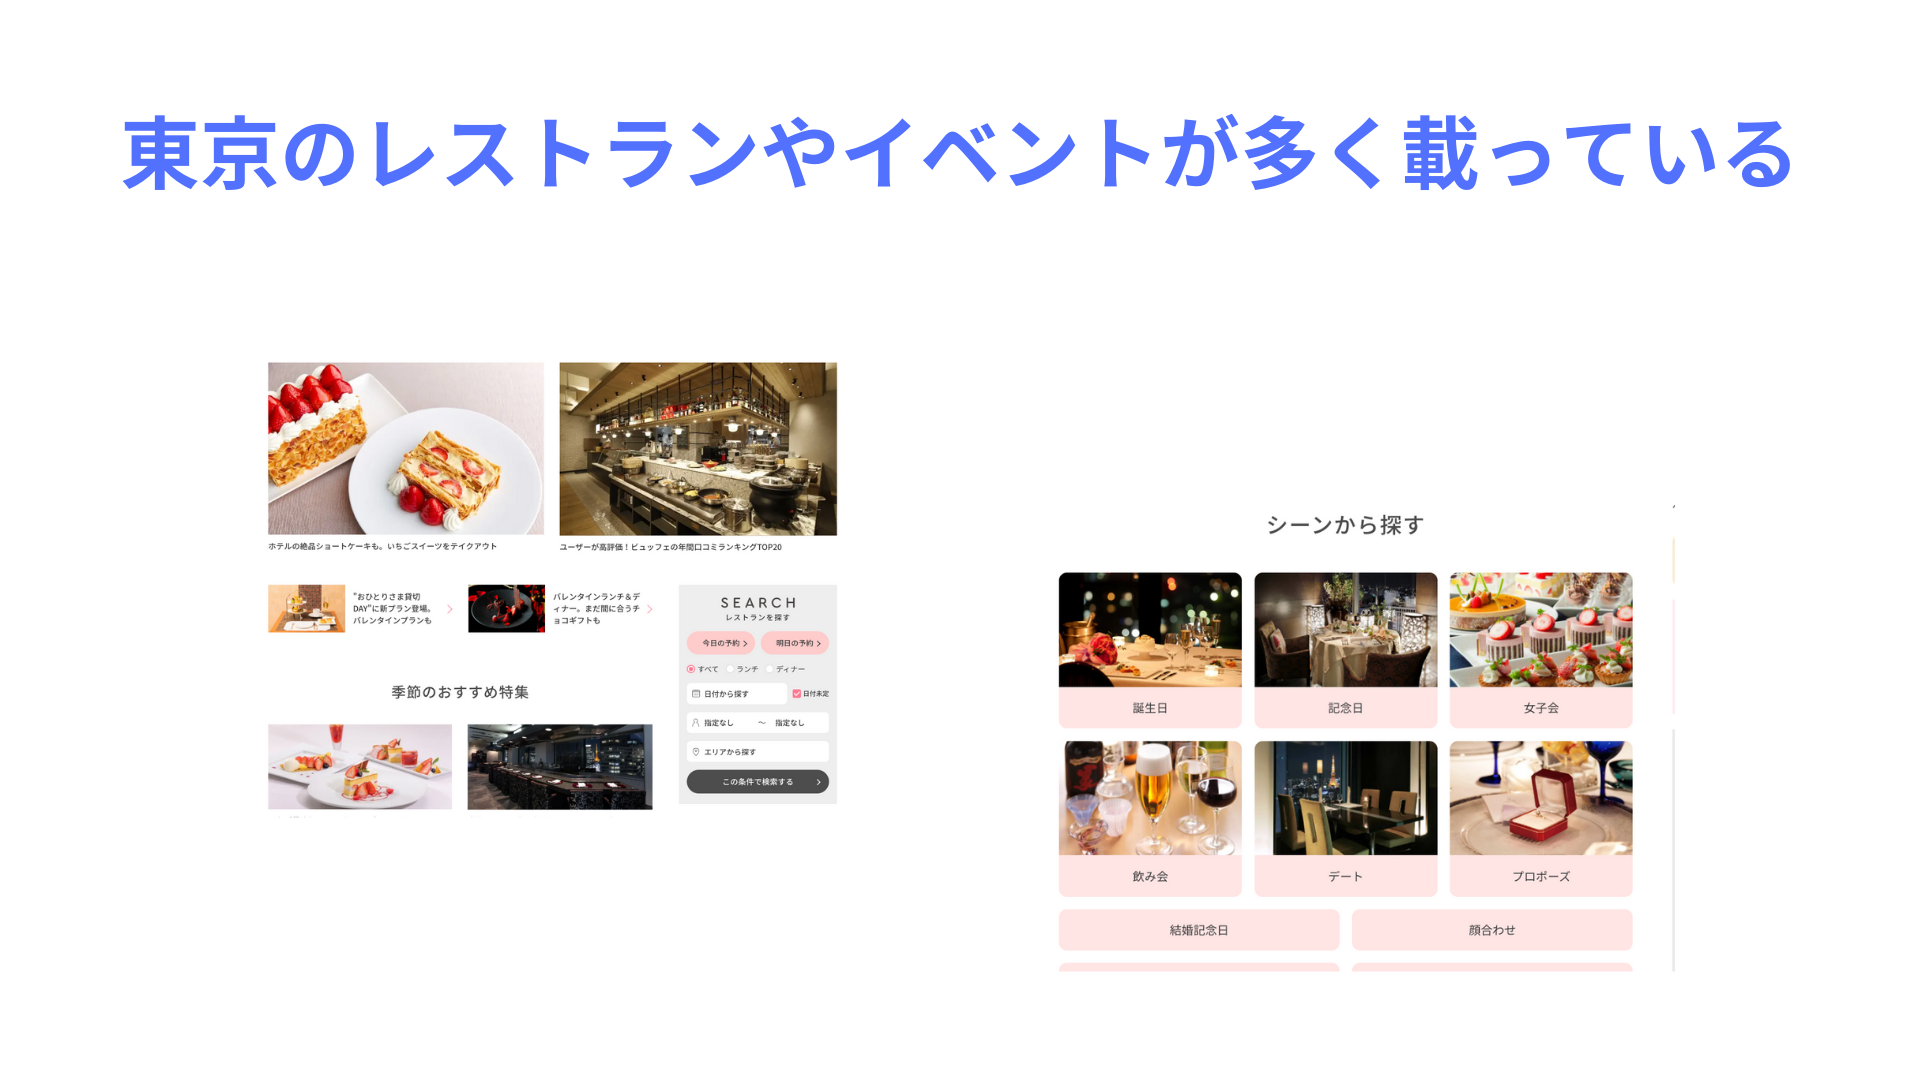 OZmall 東京のレストランやイベントが多く載っている